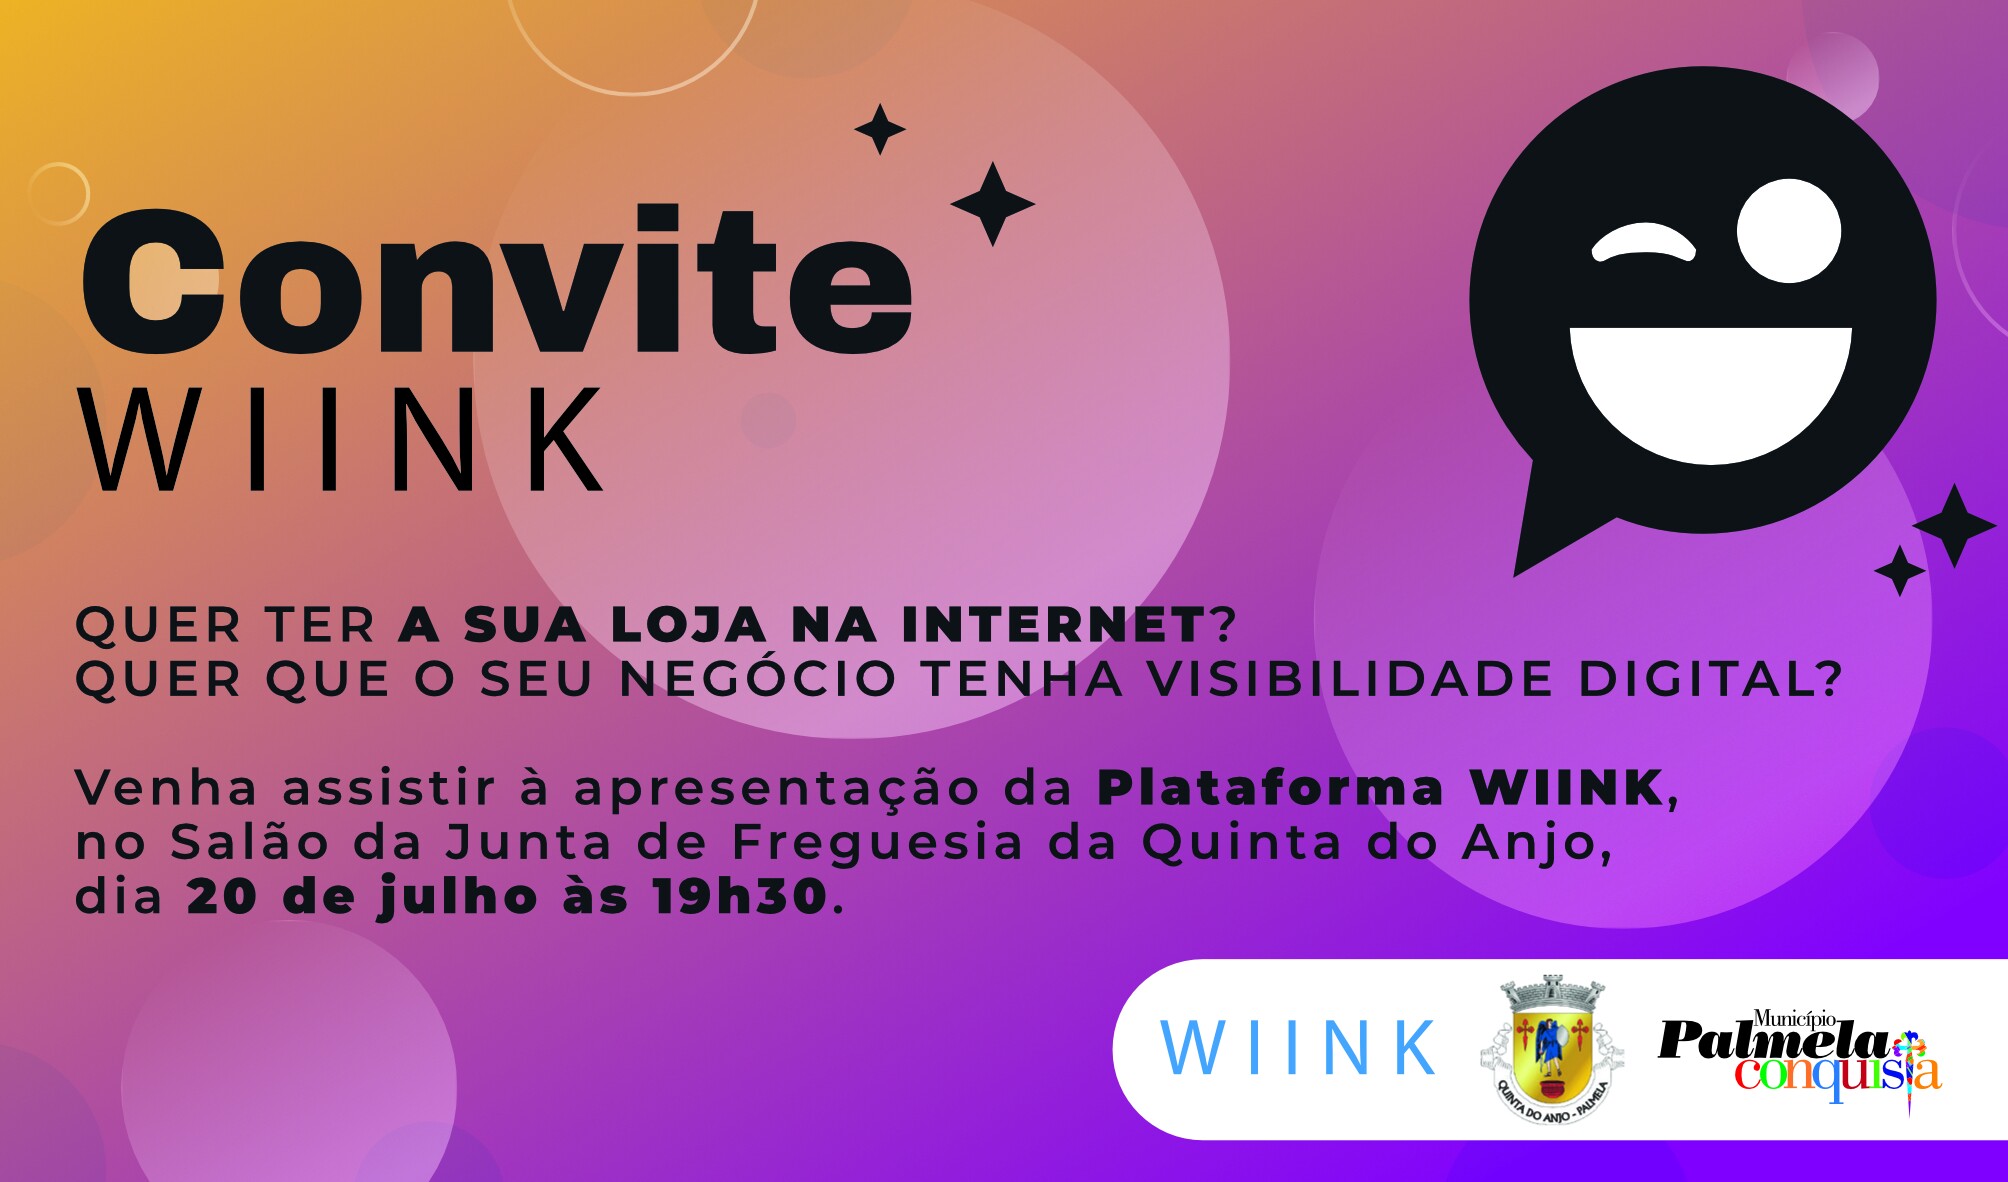 Plataforma WIINK: apresentação a 20 de julho em Quinta do Anjo